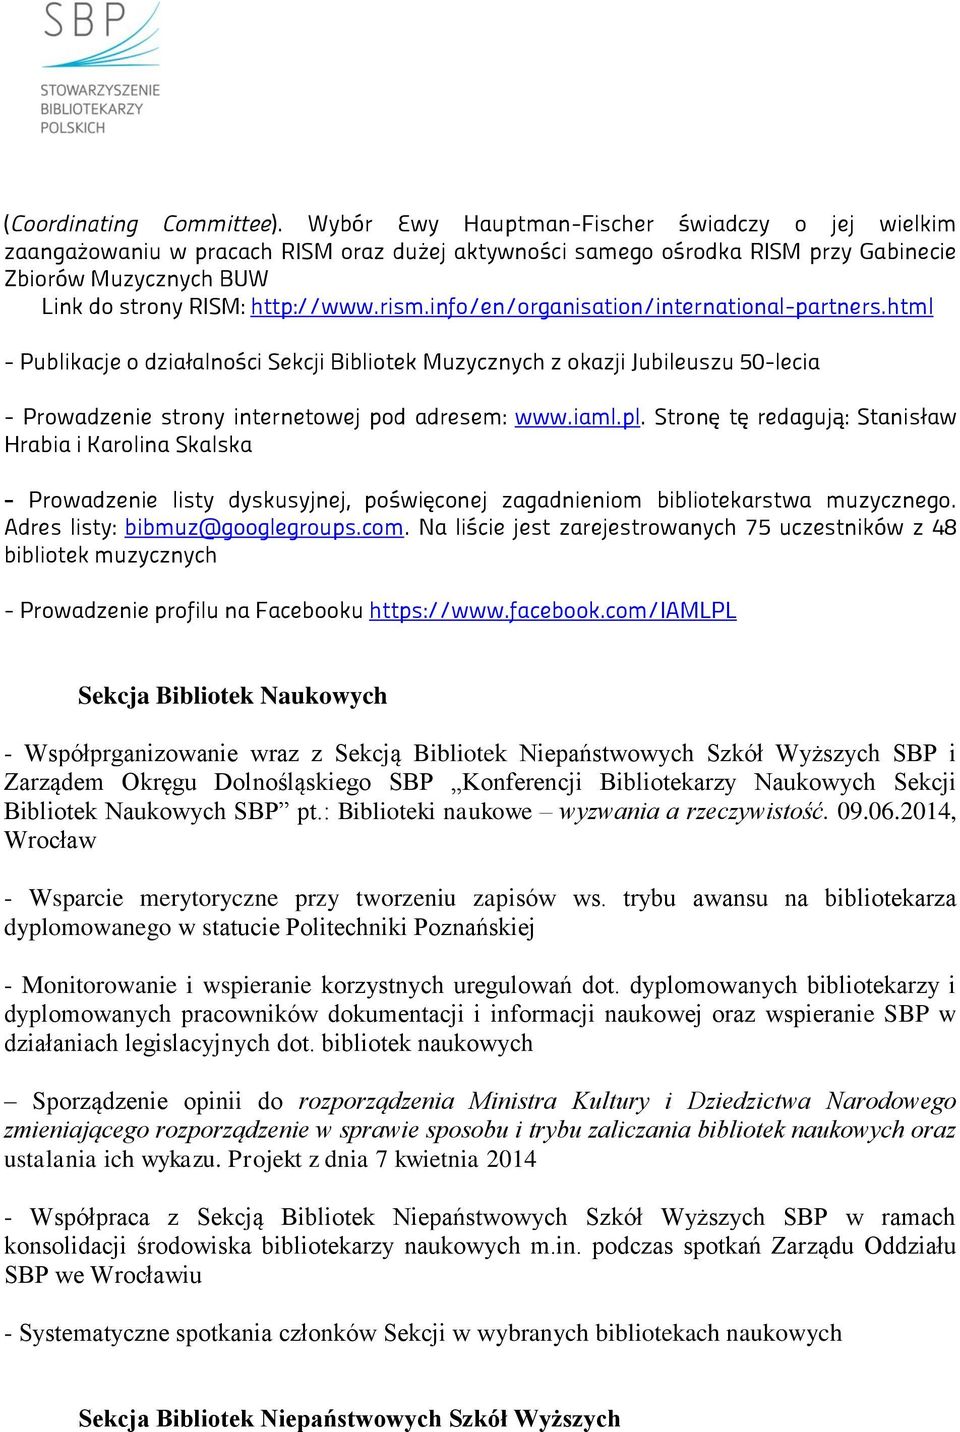 info/en/organisation/international-partners.html - Publikacje o dwiałalności Sekcji Bibliotek Mtwvcwnvch w okawji Jtbiletswt }y-lecia - Prowadzenie strony internetowej pod adresem: www.iaml.pl.